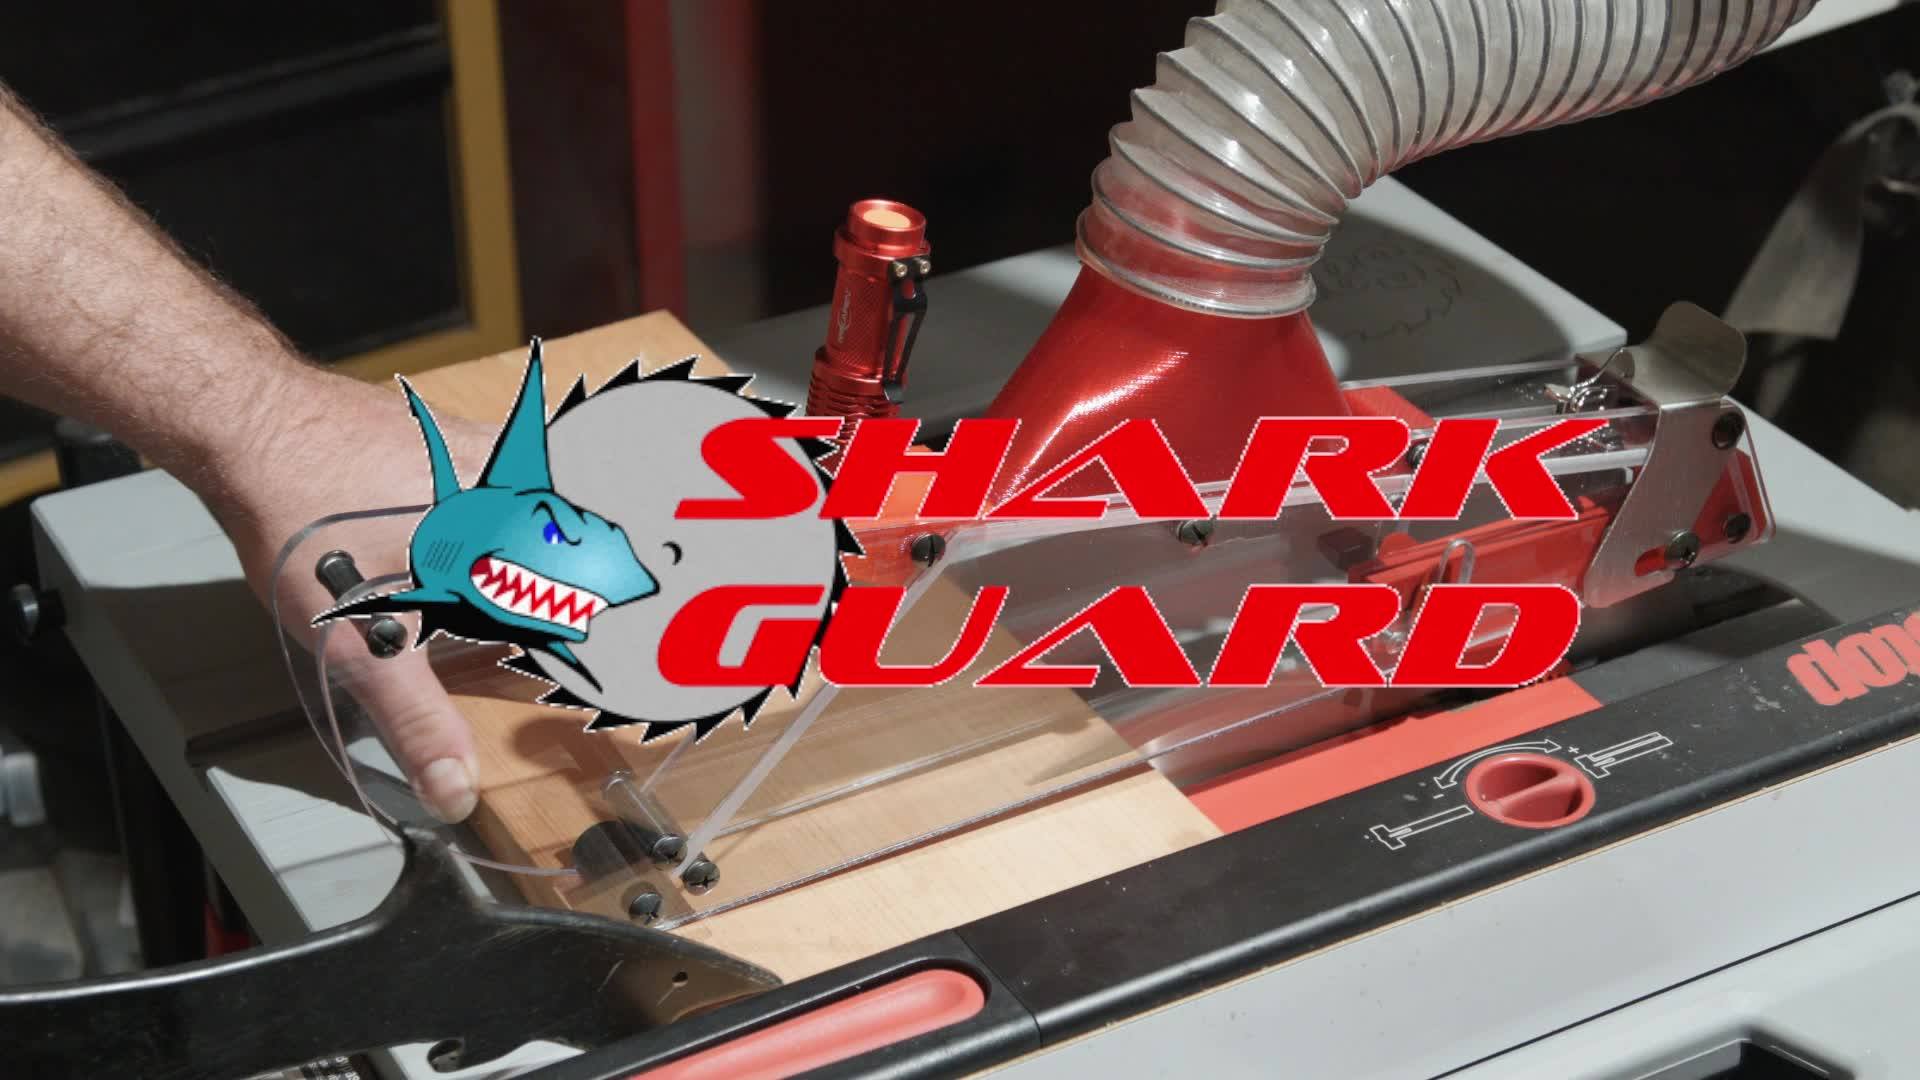 https://www.thesharkguard.com/wp-content/uploads/2019/10/sharkguard-cover.jpg